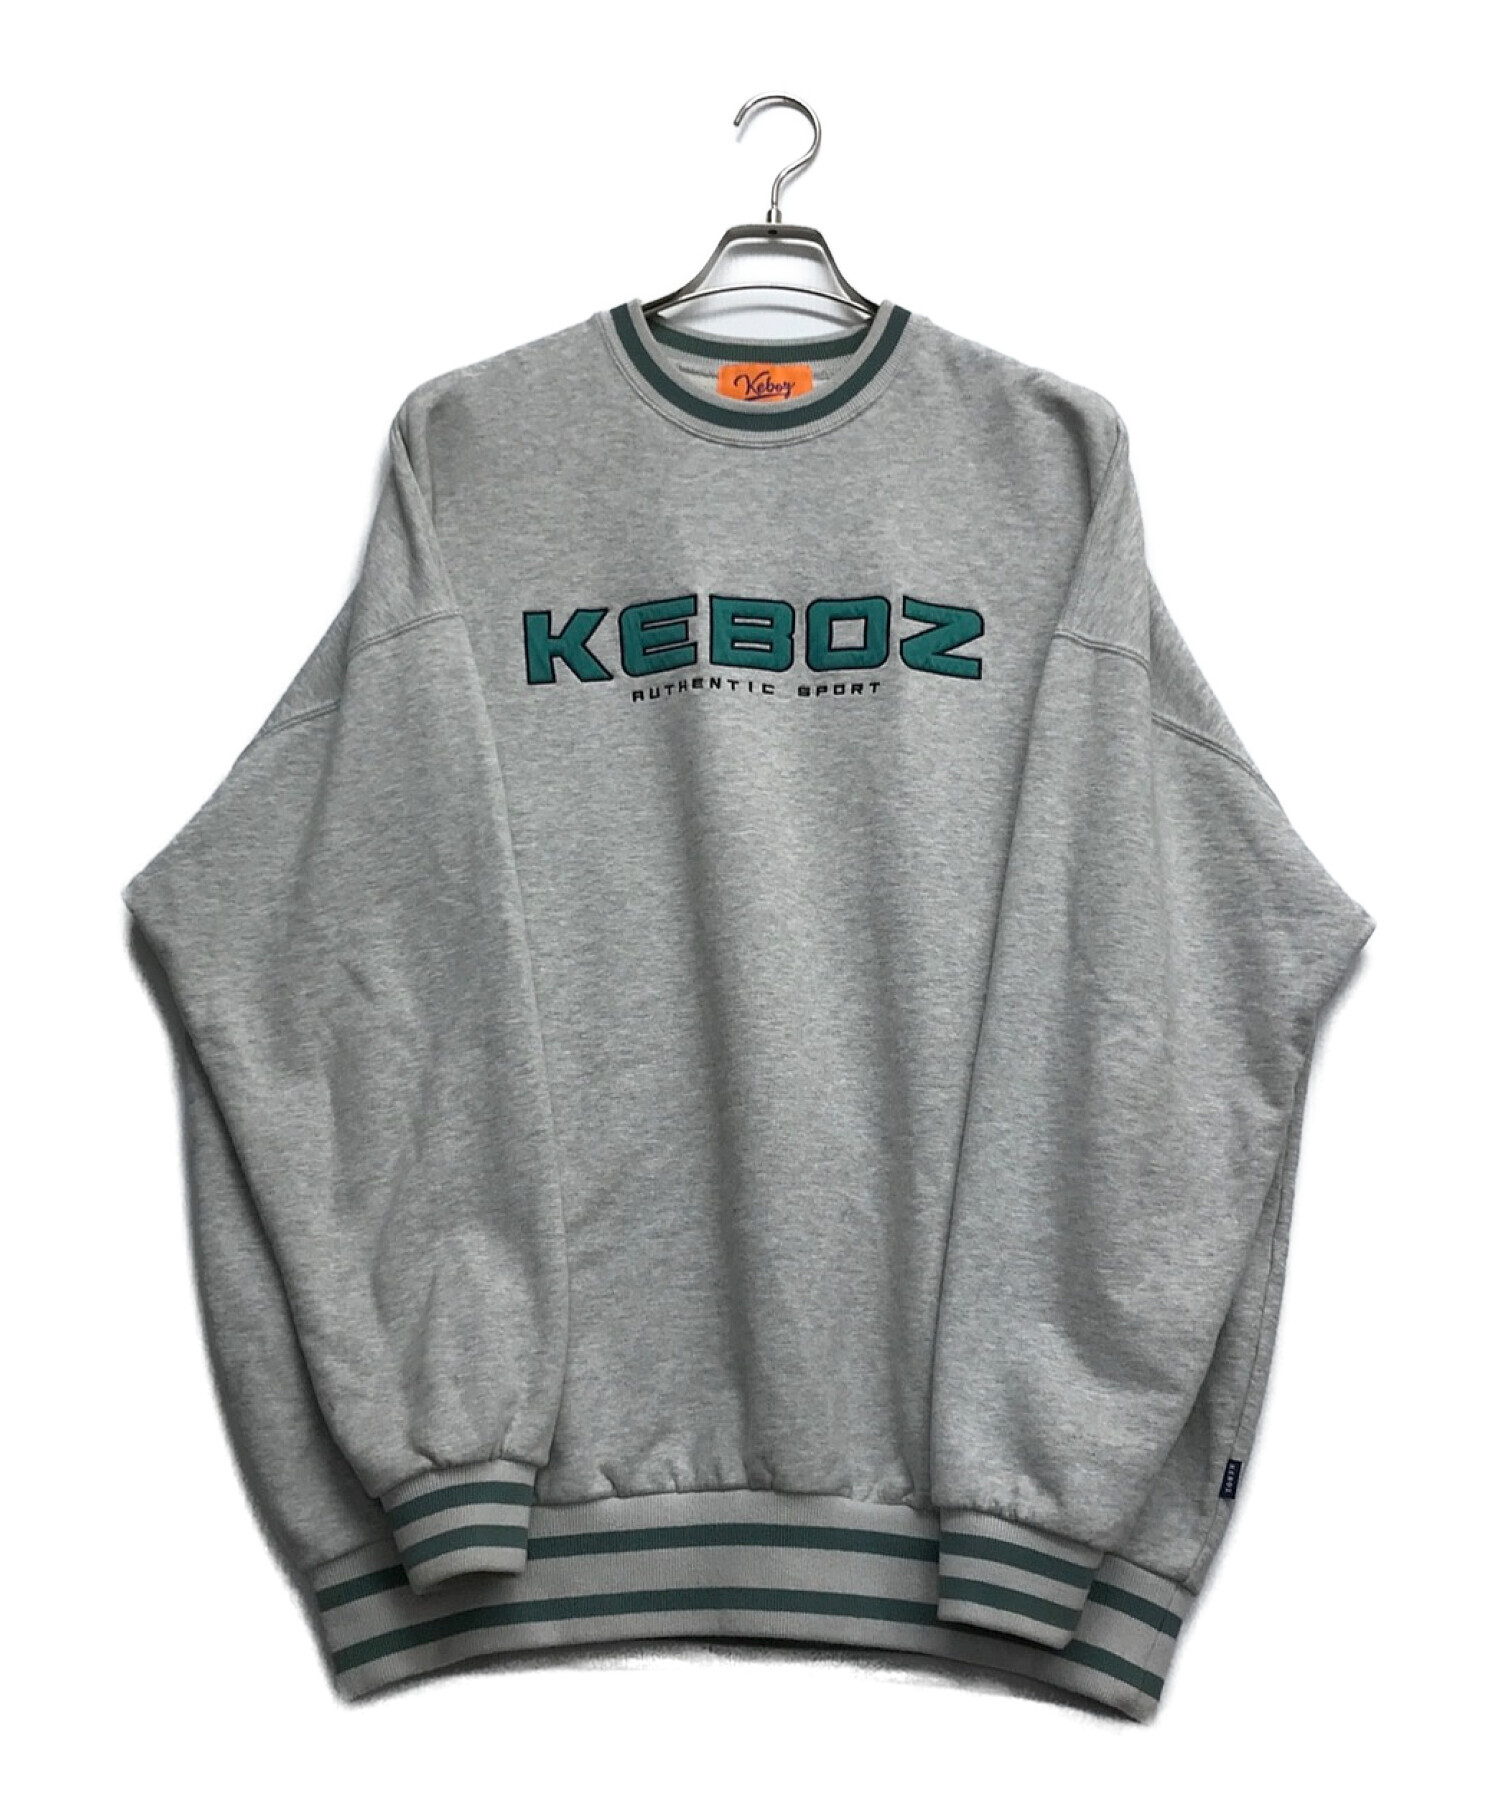 KEBOZ (ケボズ) ロゴスウェット グレー サイズ:L